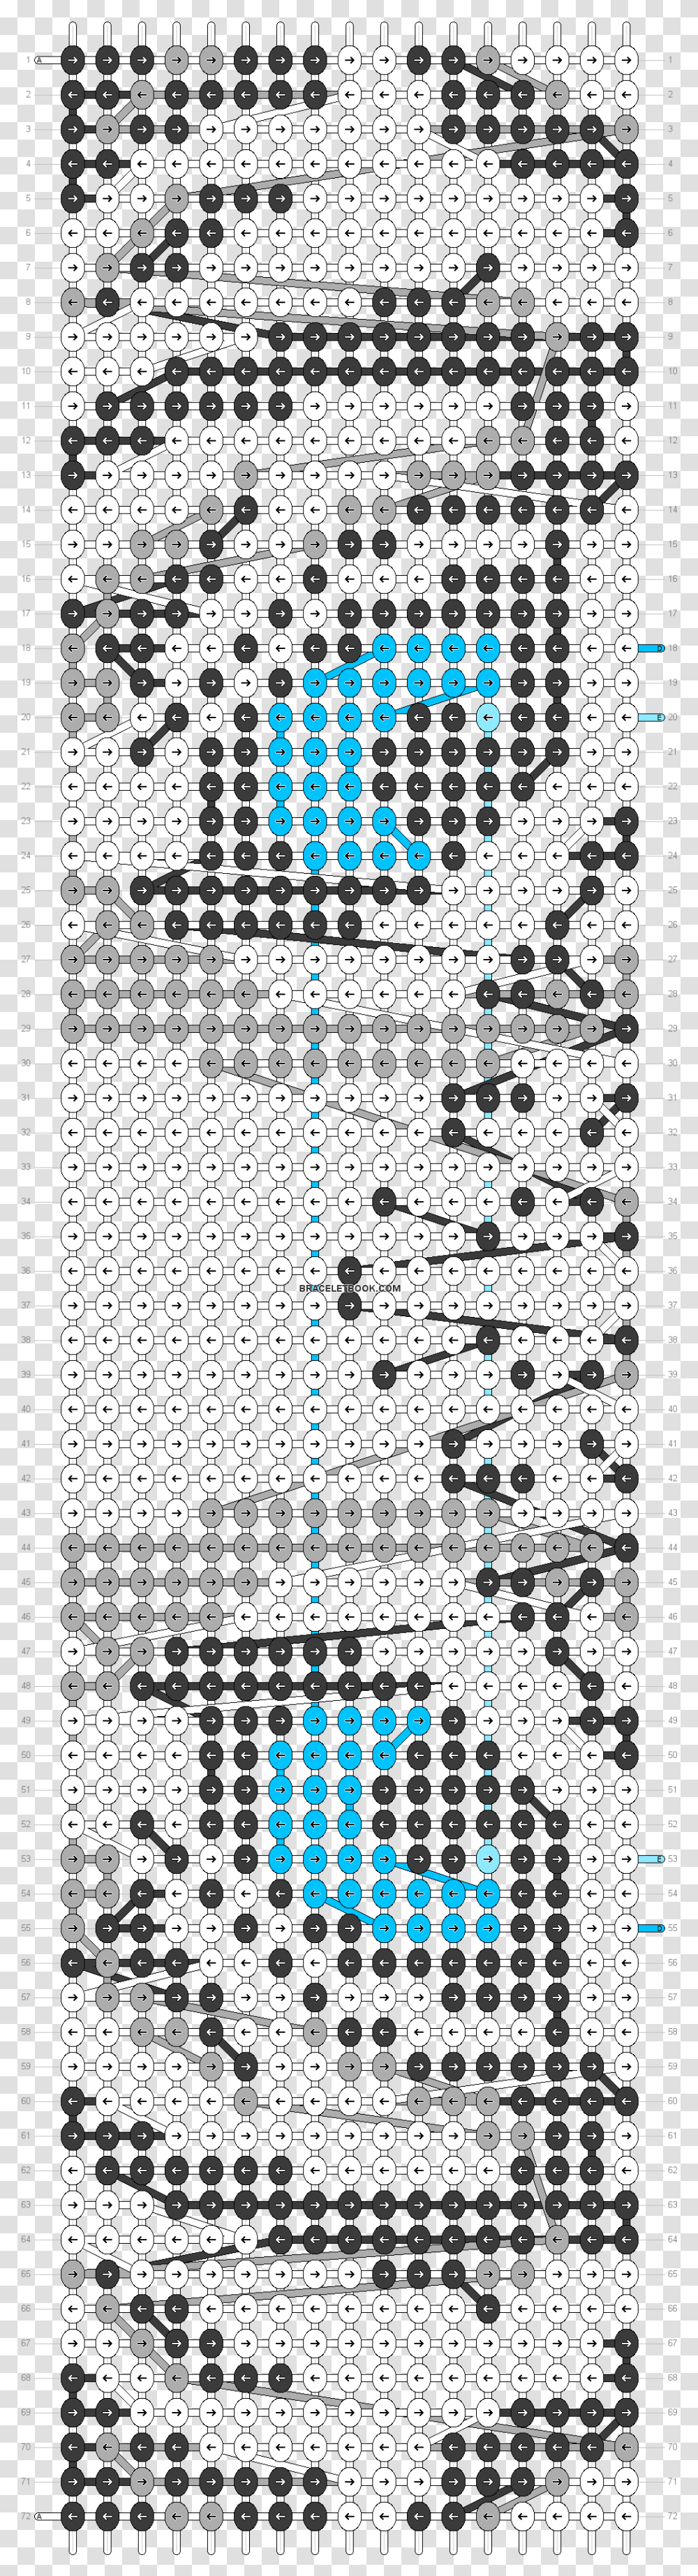 Alpha Pattern Patrones De Macrame Alpha Tigres, Silhouette, Texture, Stencil Transparent Png